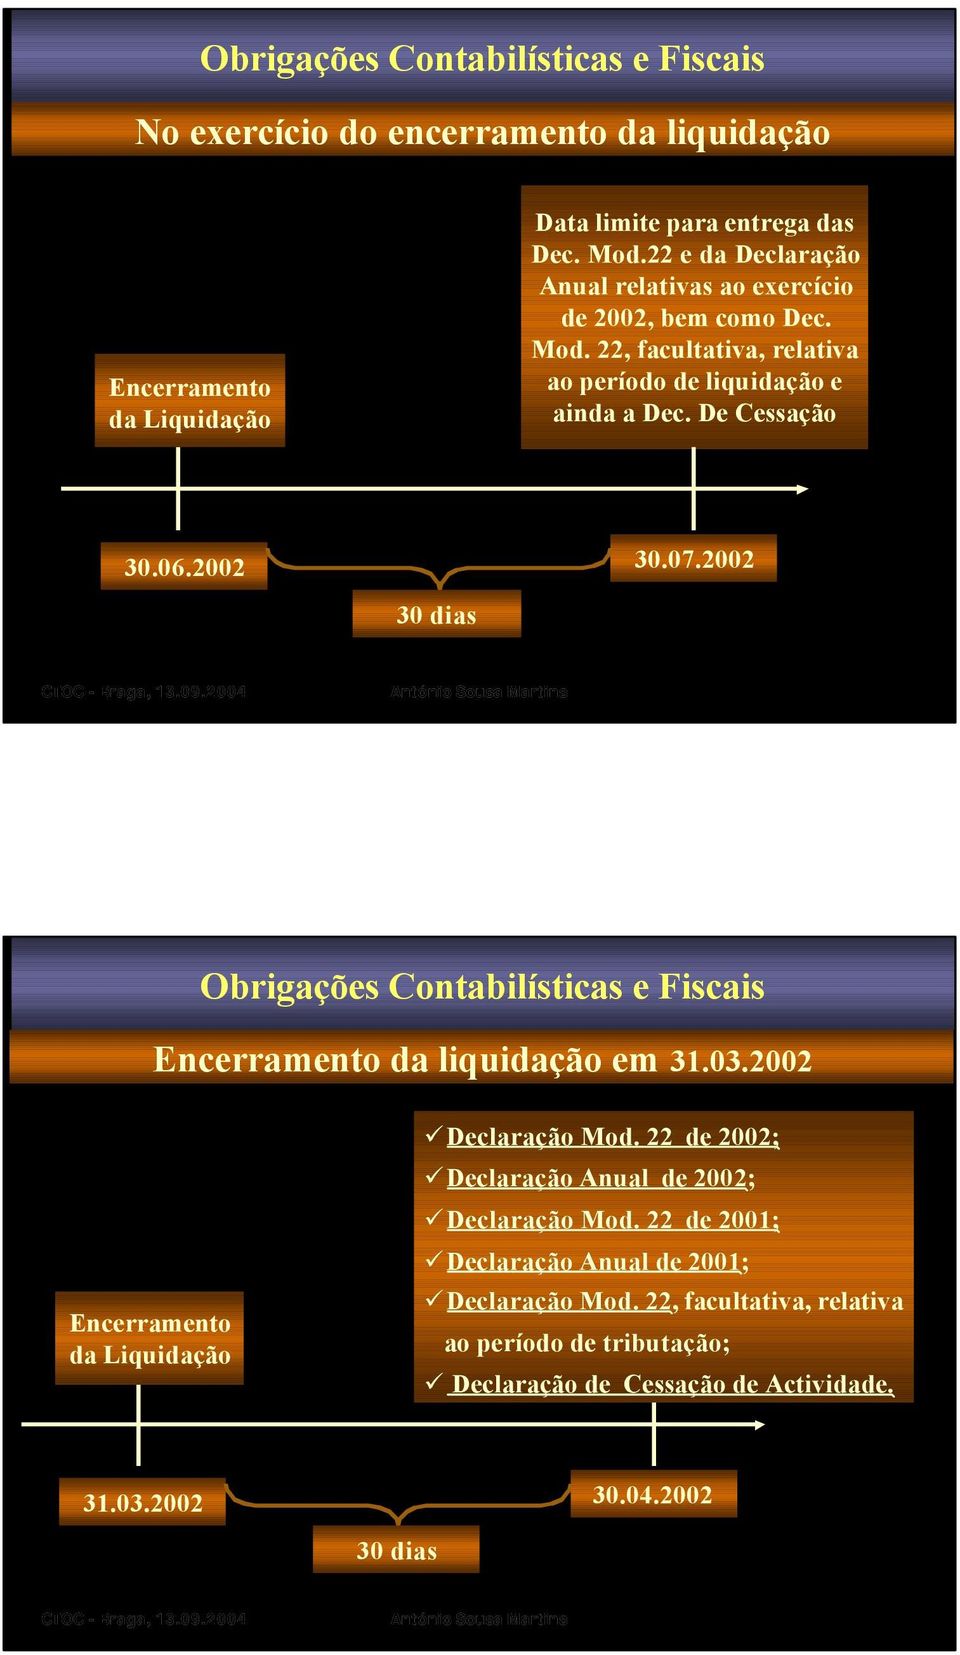 07.2002 30 dias Obrigações Contabilísticas e Fiscais Encerramento da liquidação em 31.03.2002 Encerramento da Liquidação Declaração Mod.